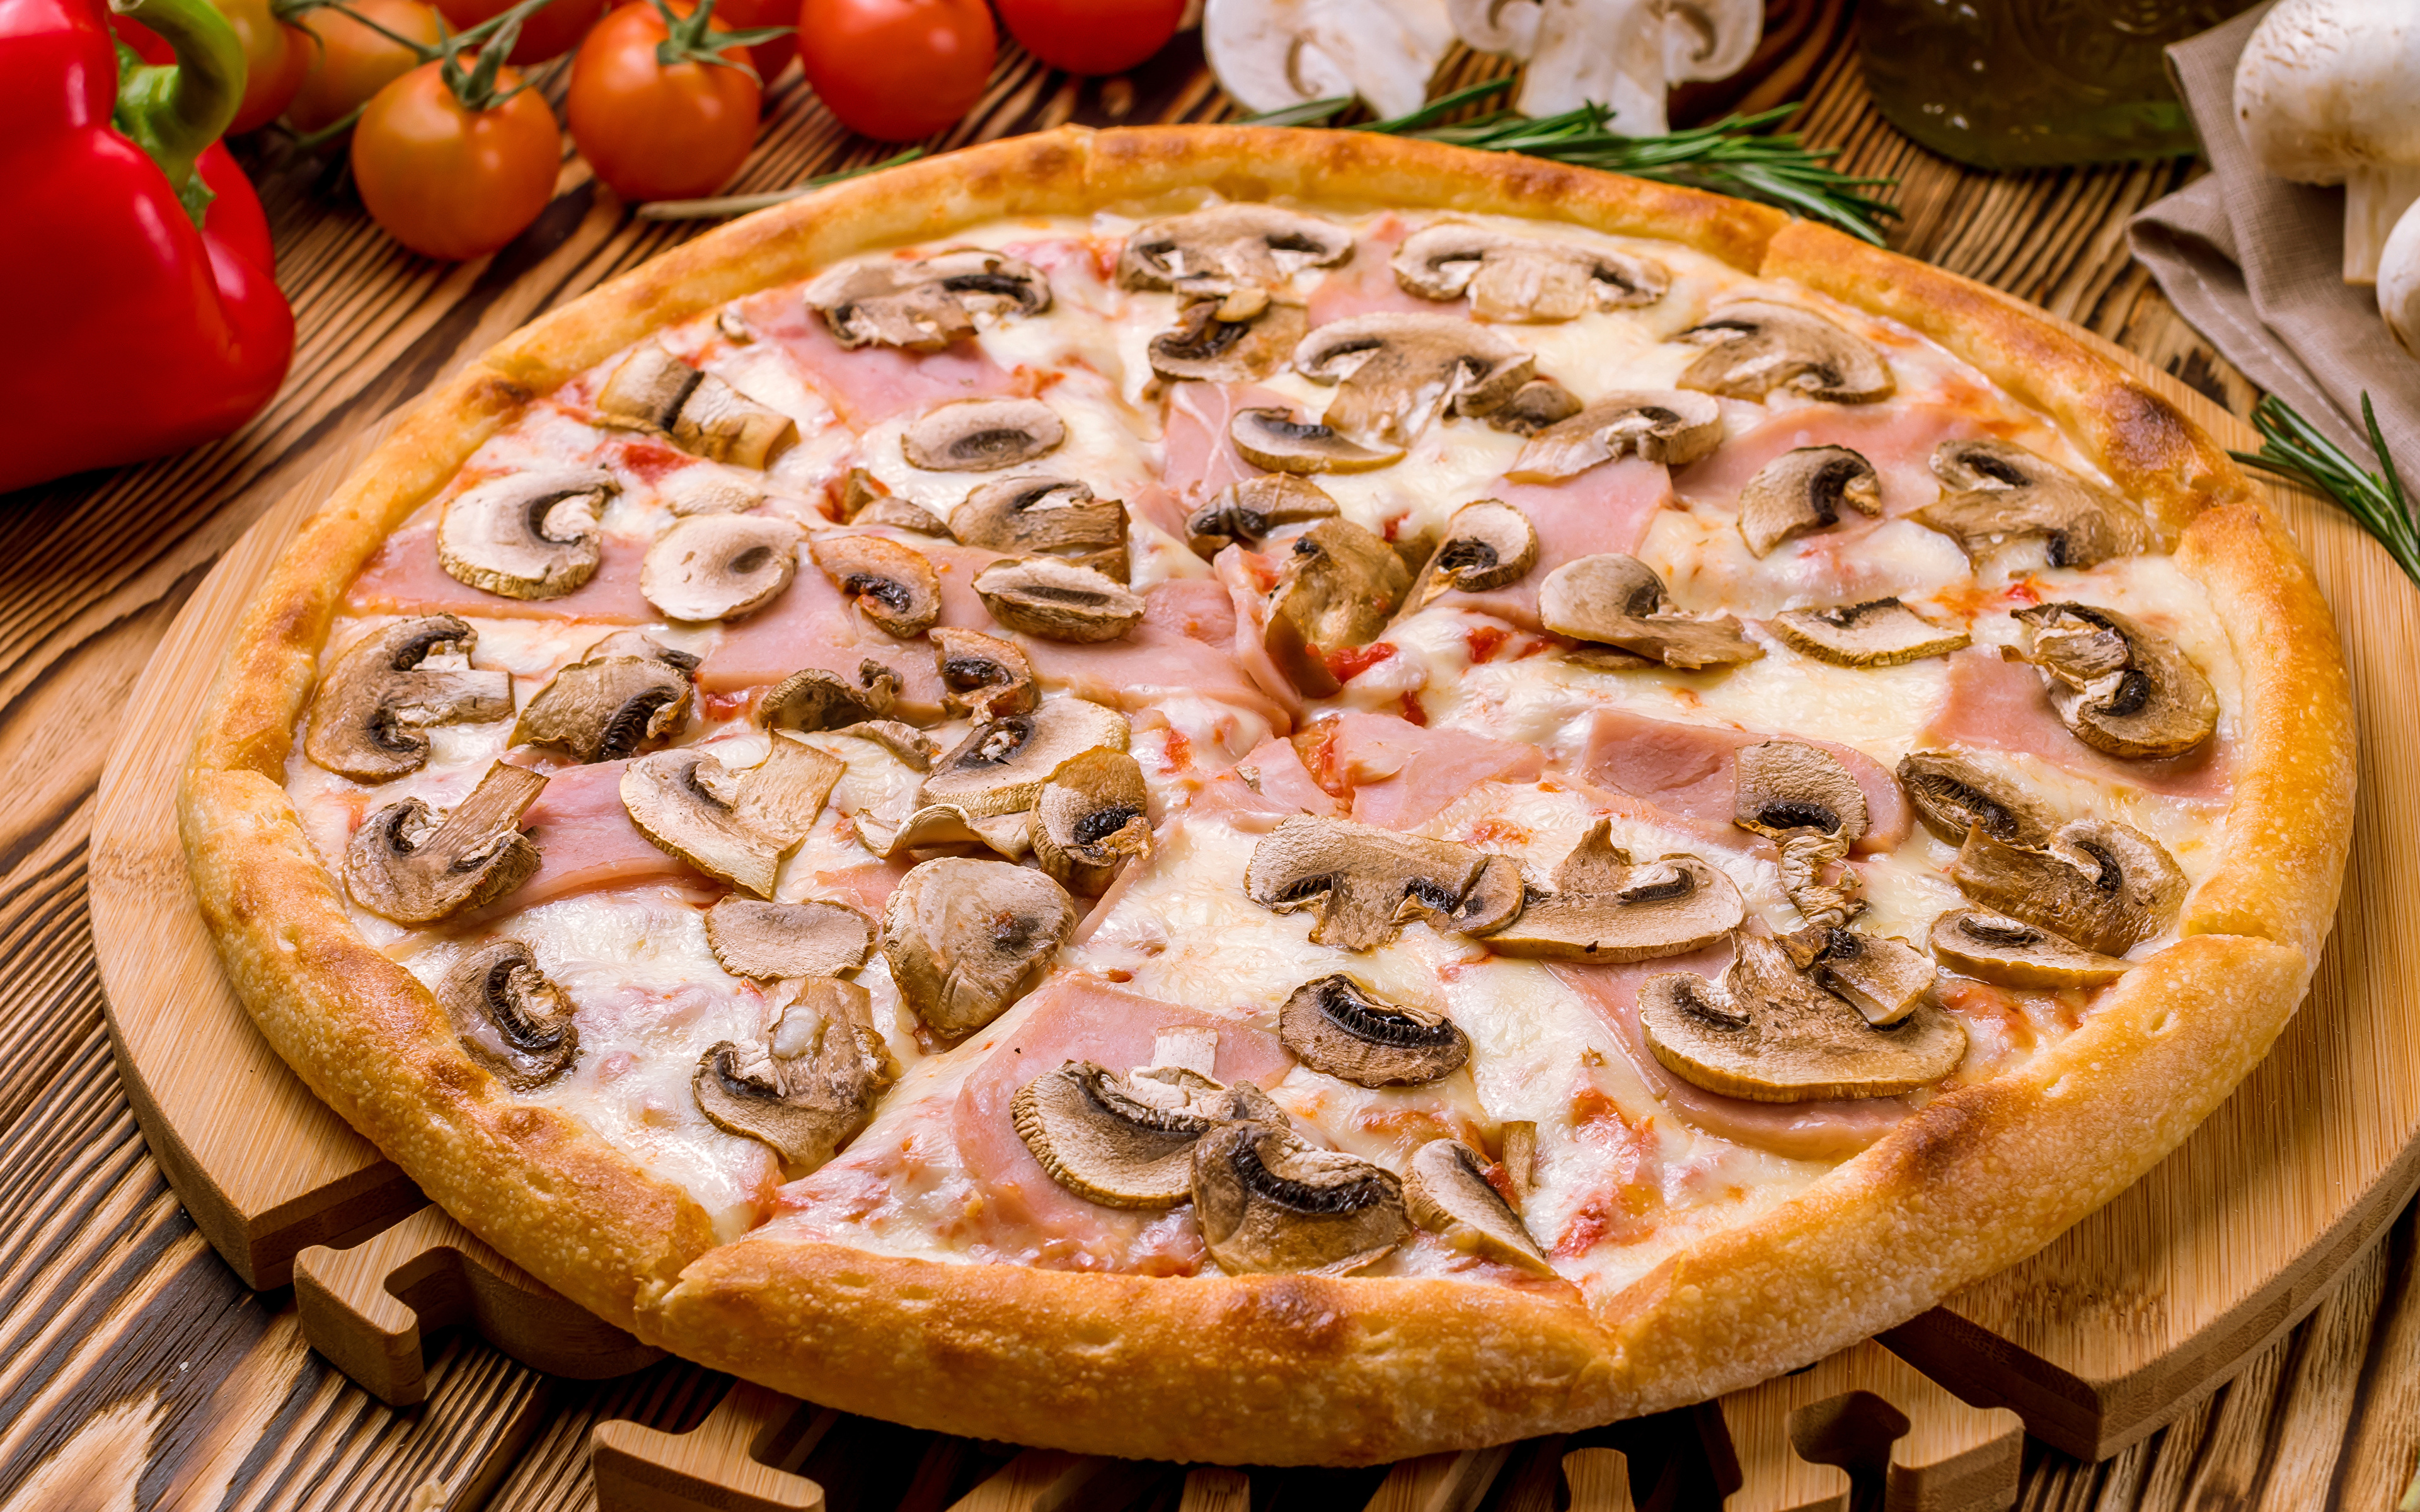 Сколько белых грибов на пиццу